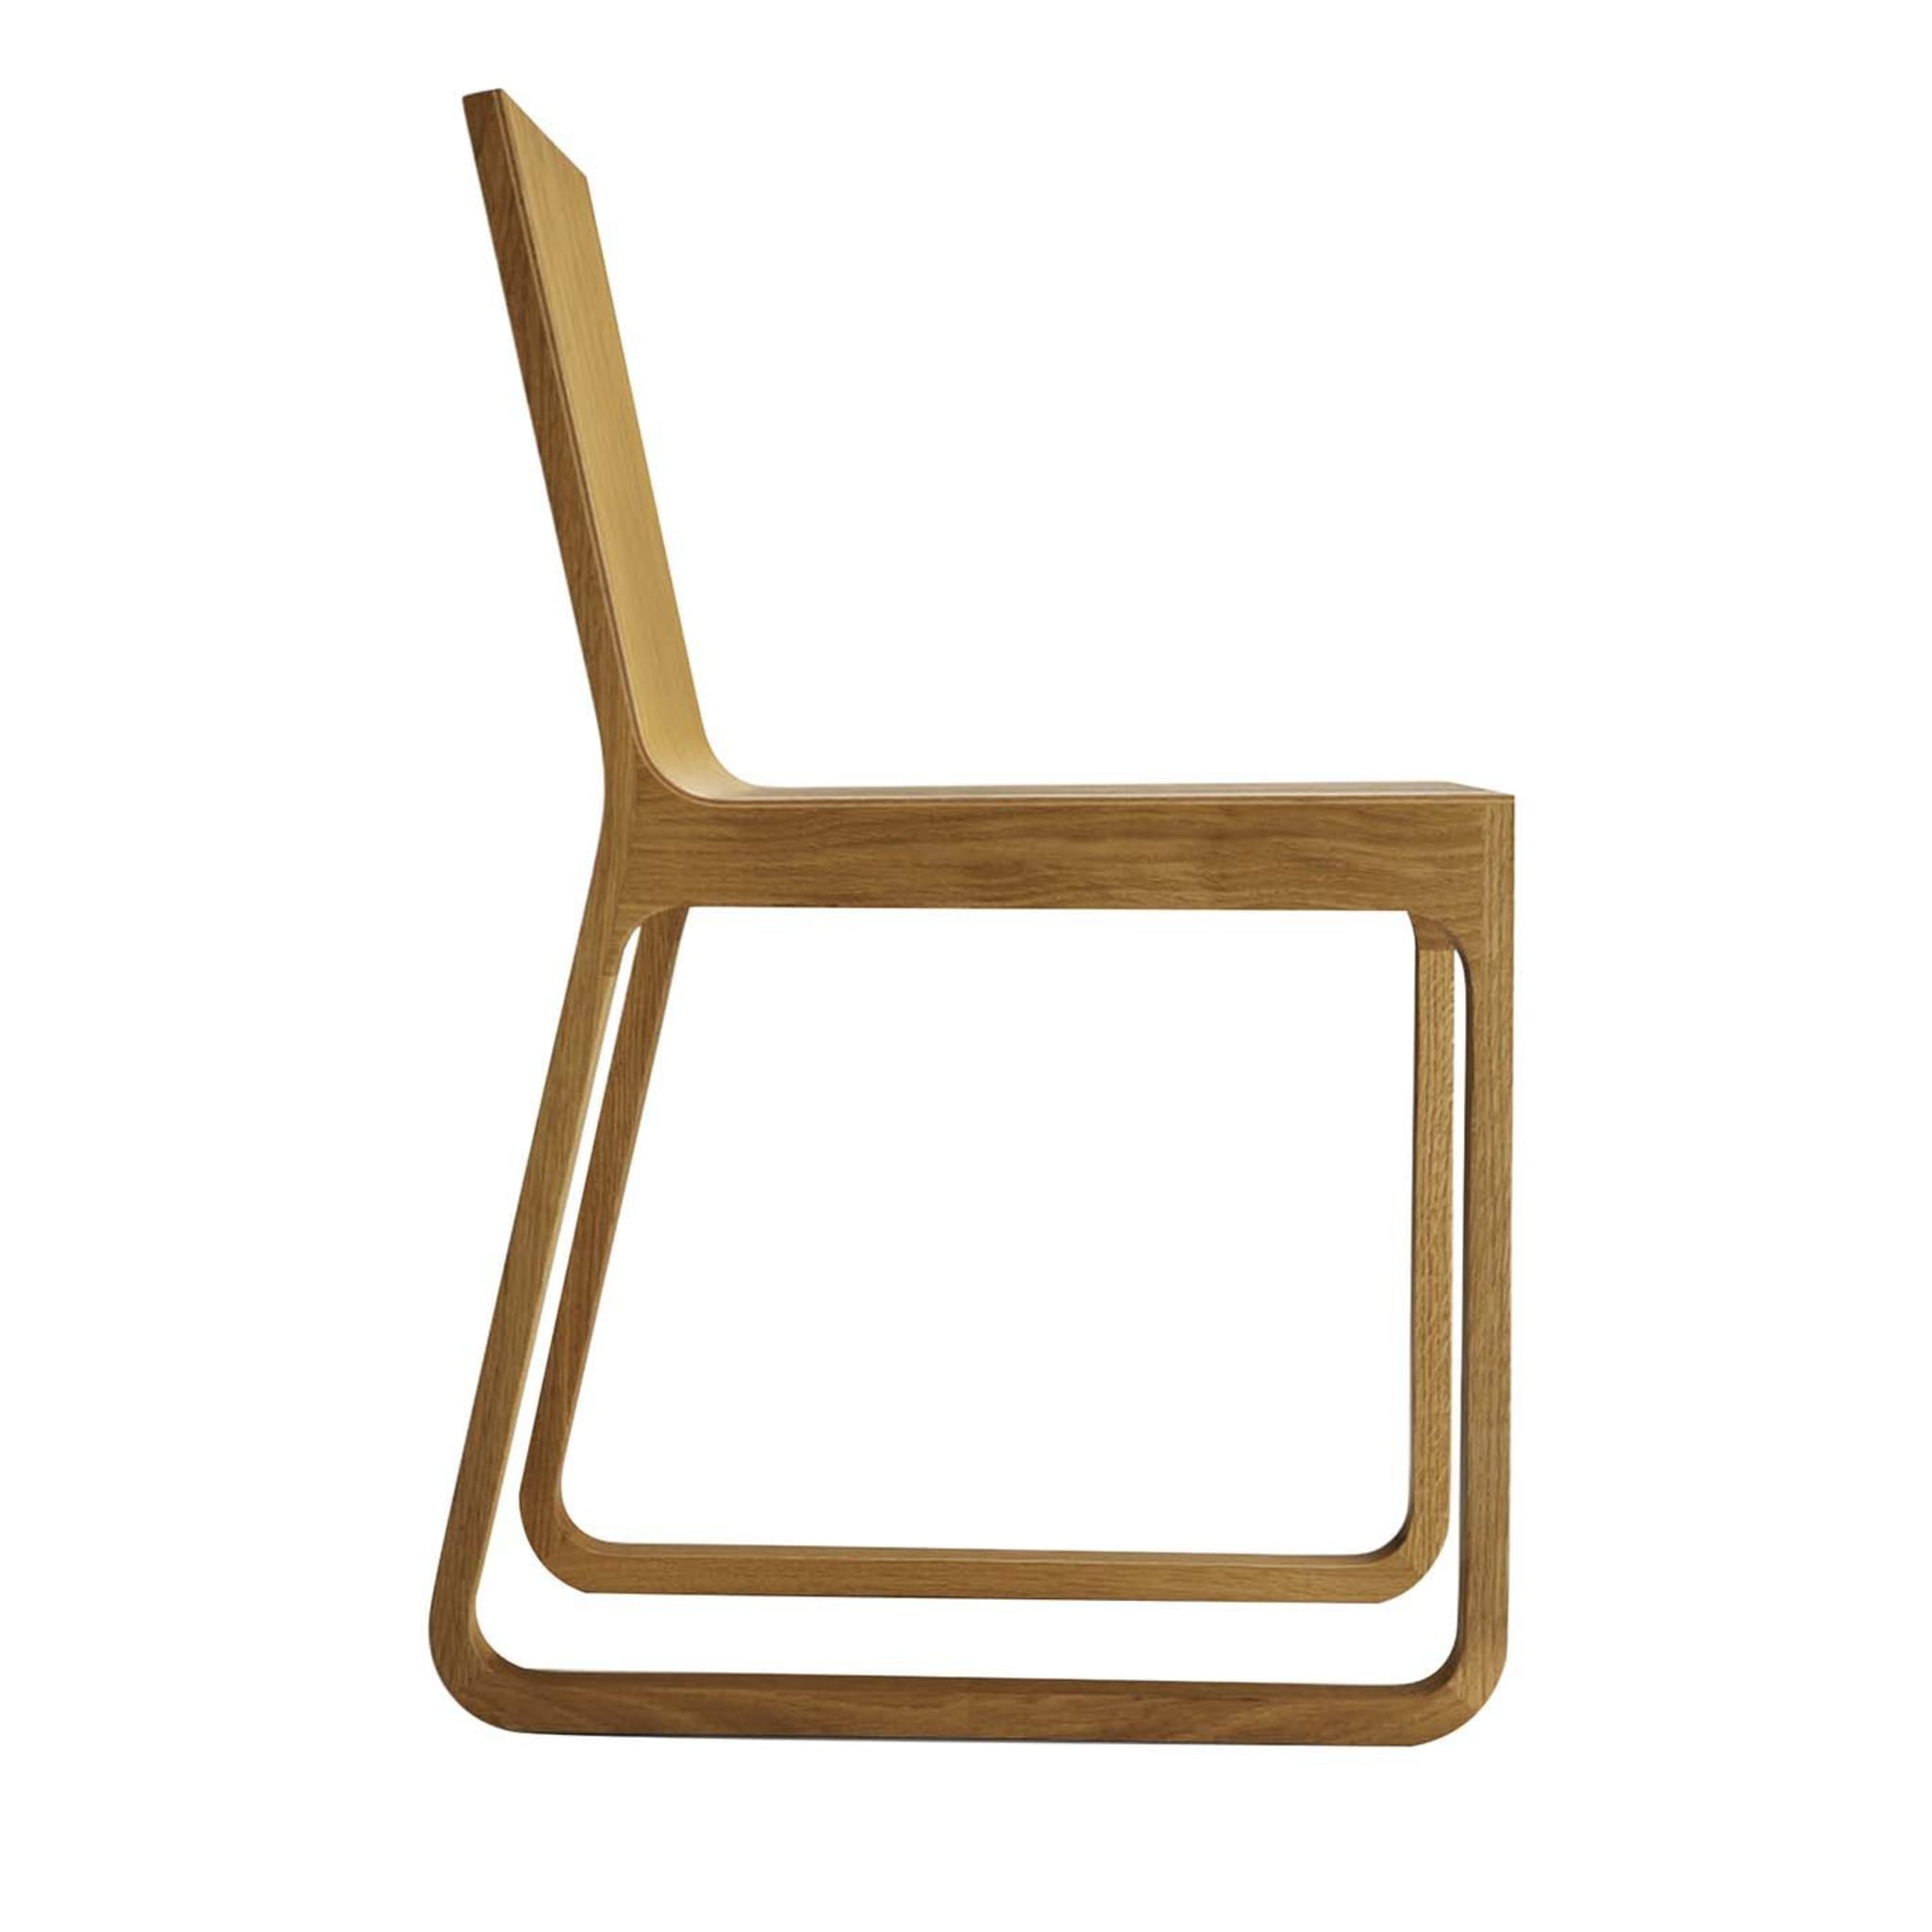 Muu Chair by Harri Koskinen - Main view